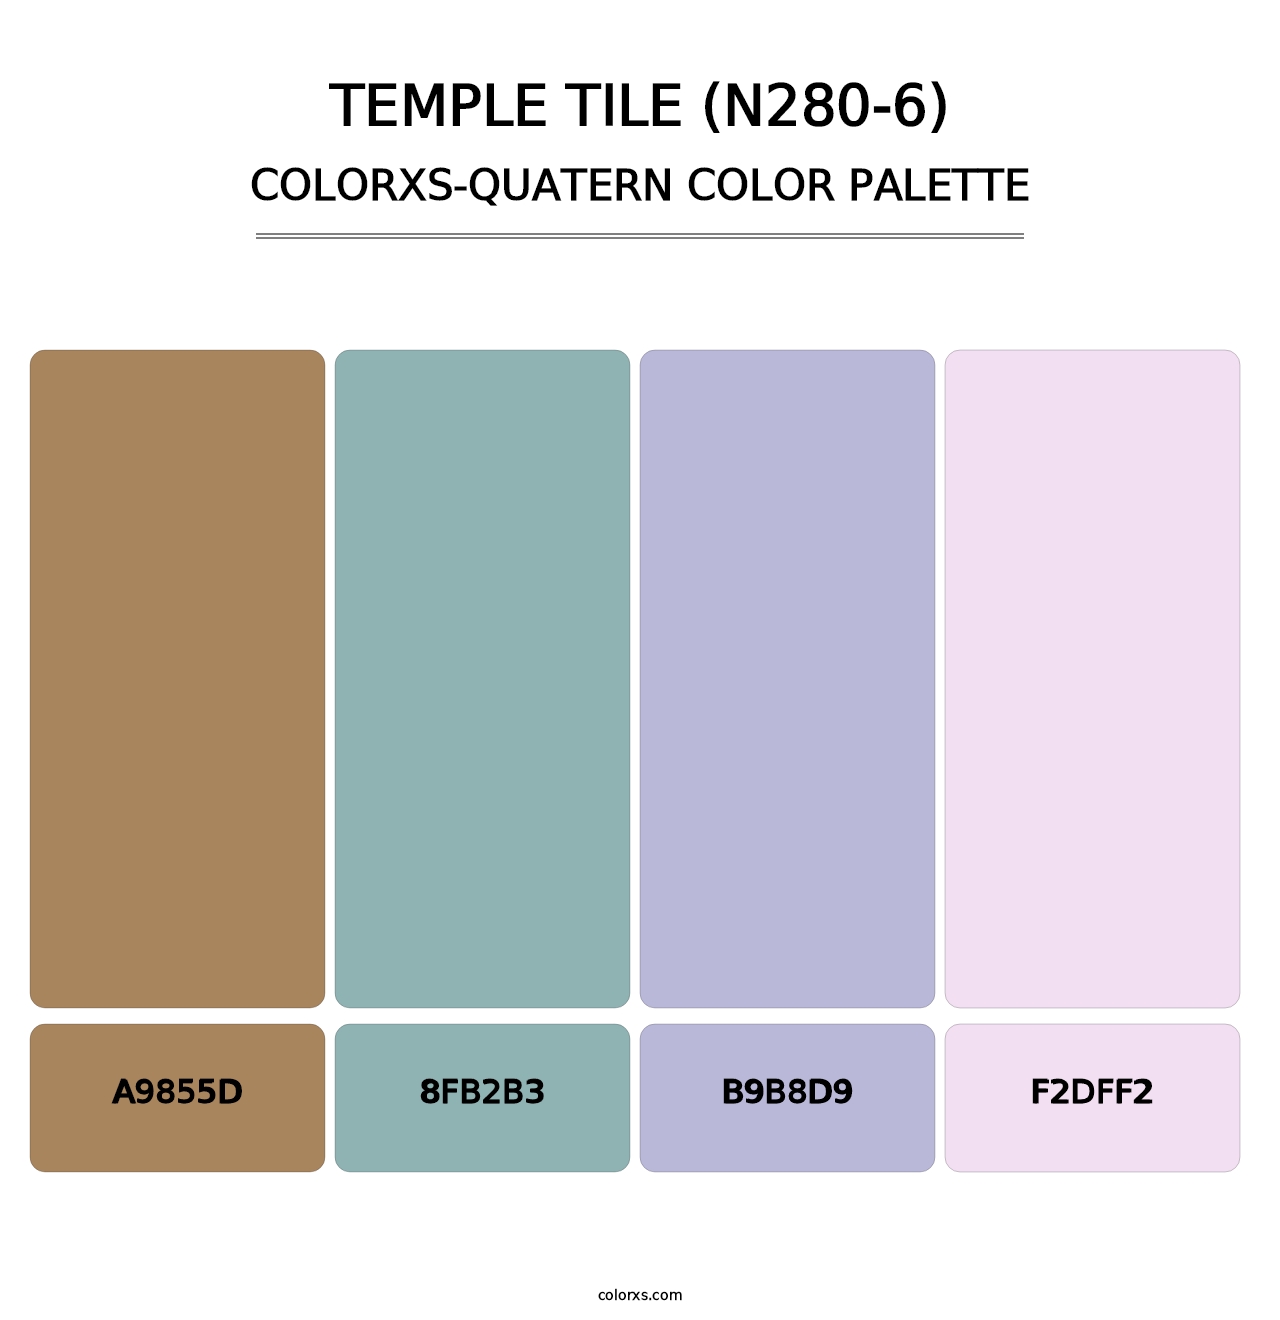 Temple Tile (N280-6) - Colorxs Quatern Palette